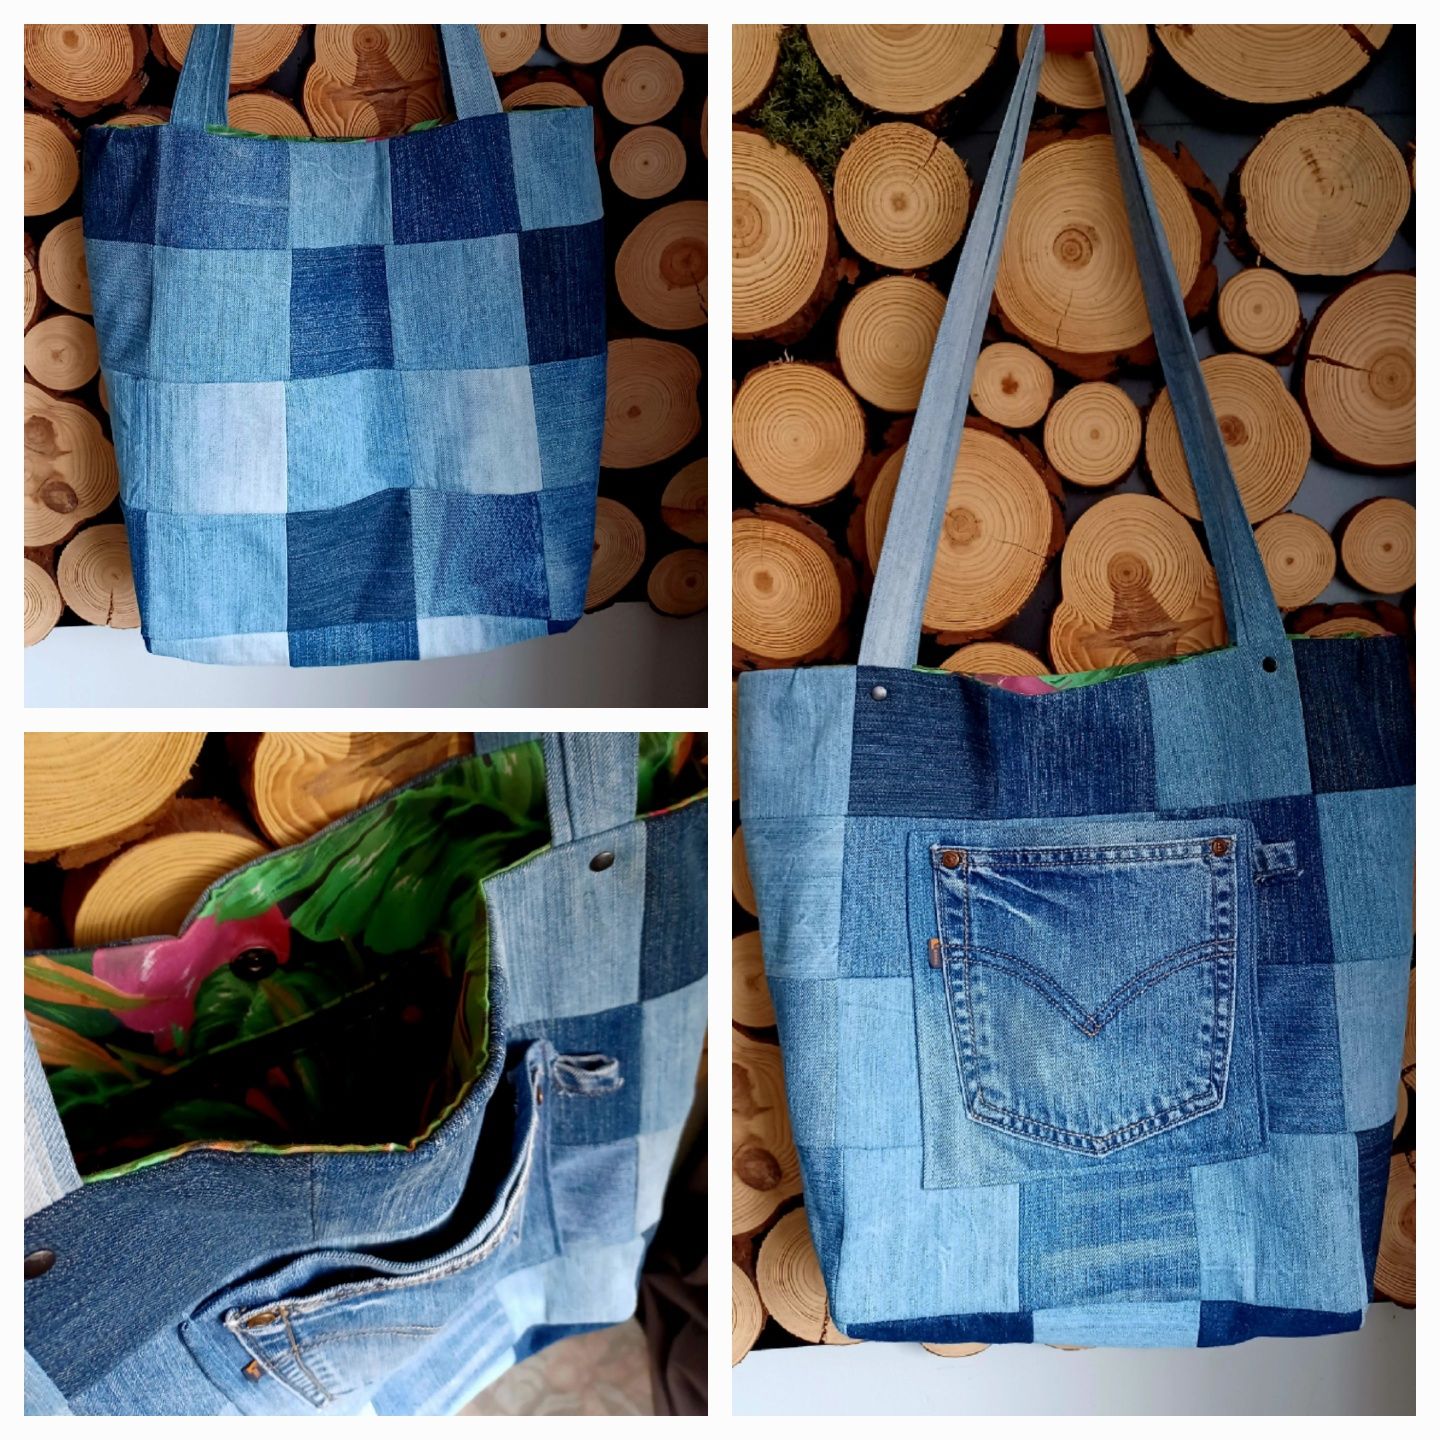 Torba jeansowa recyklingowa handmade